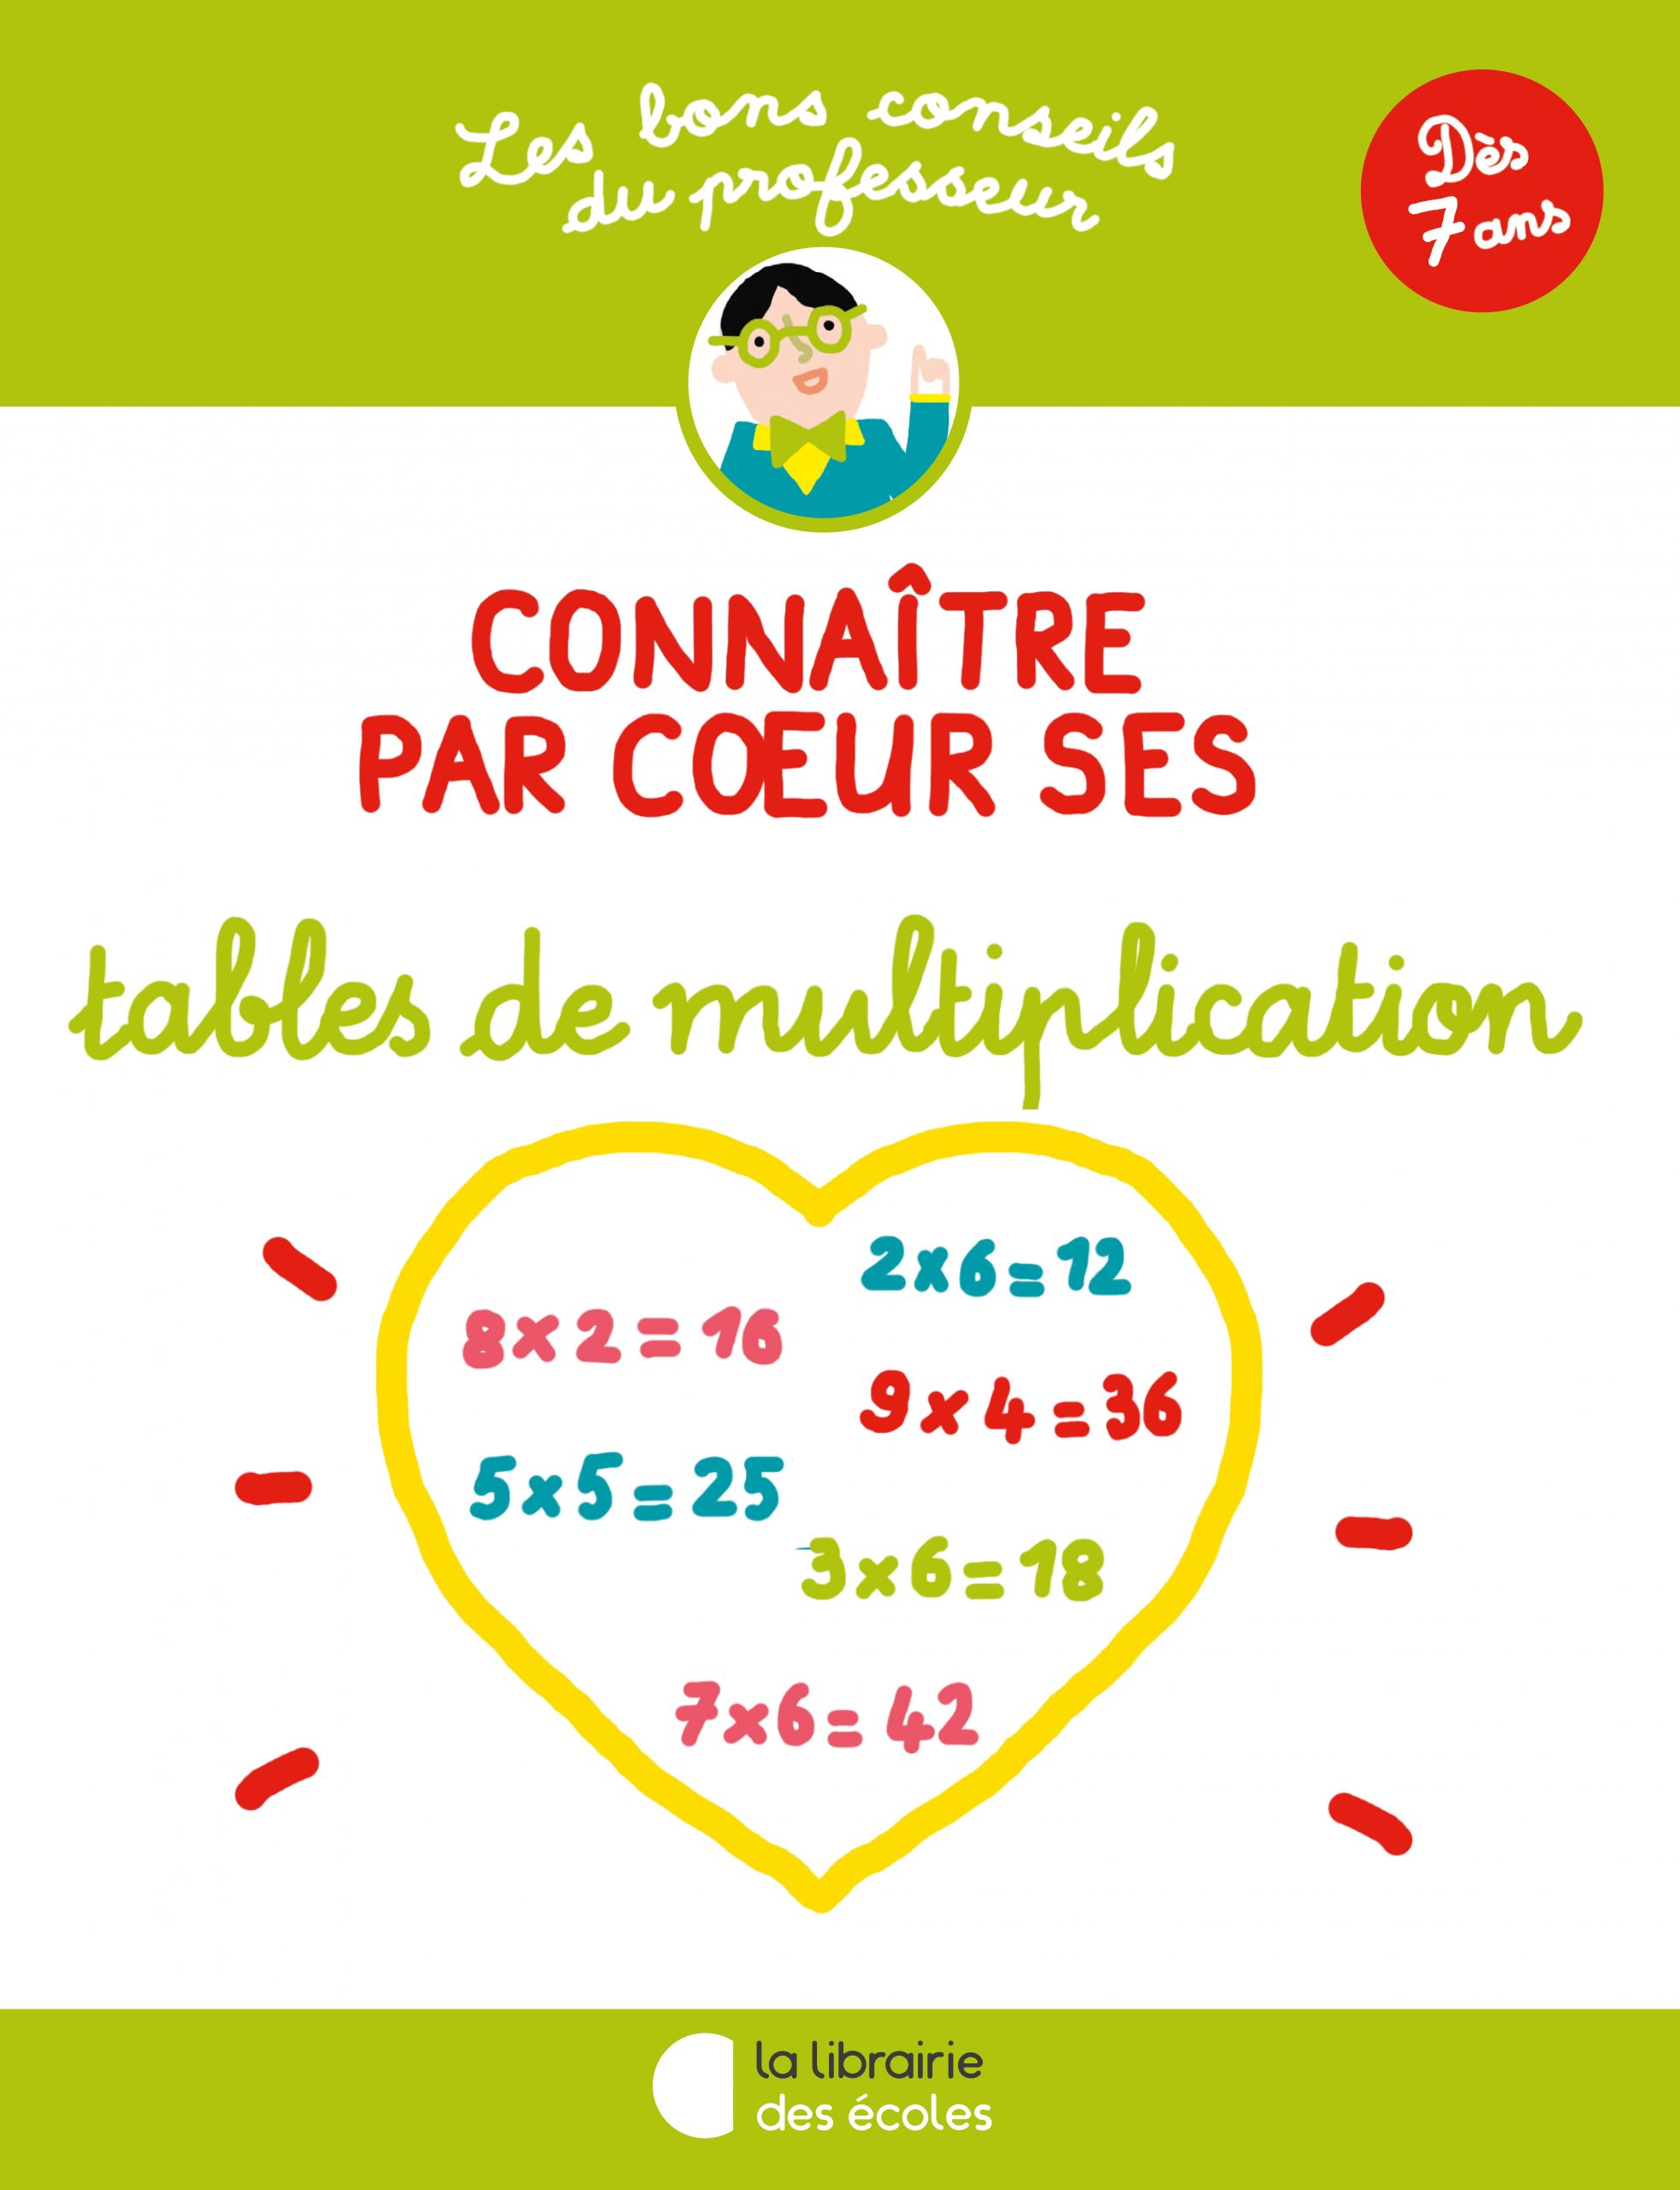 Une méthode originale pour apprendre les tables de multiplication